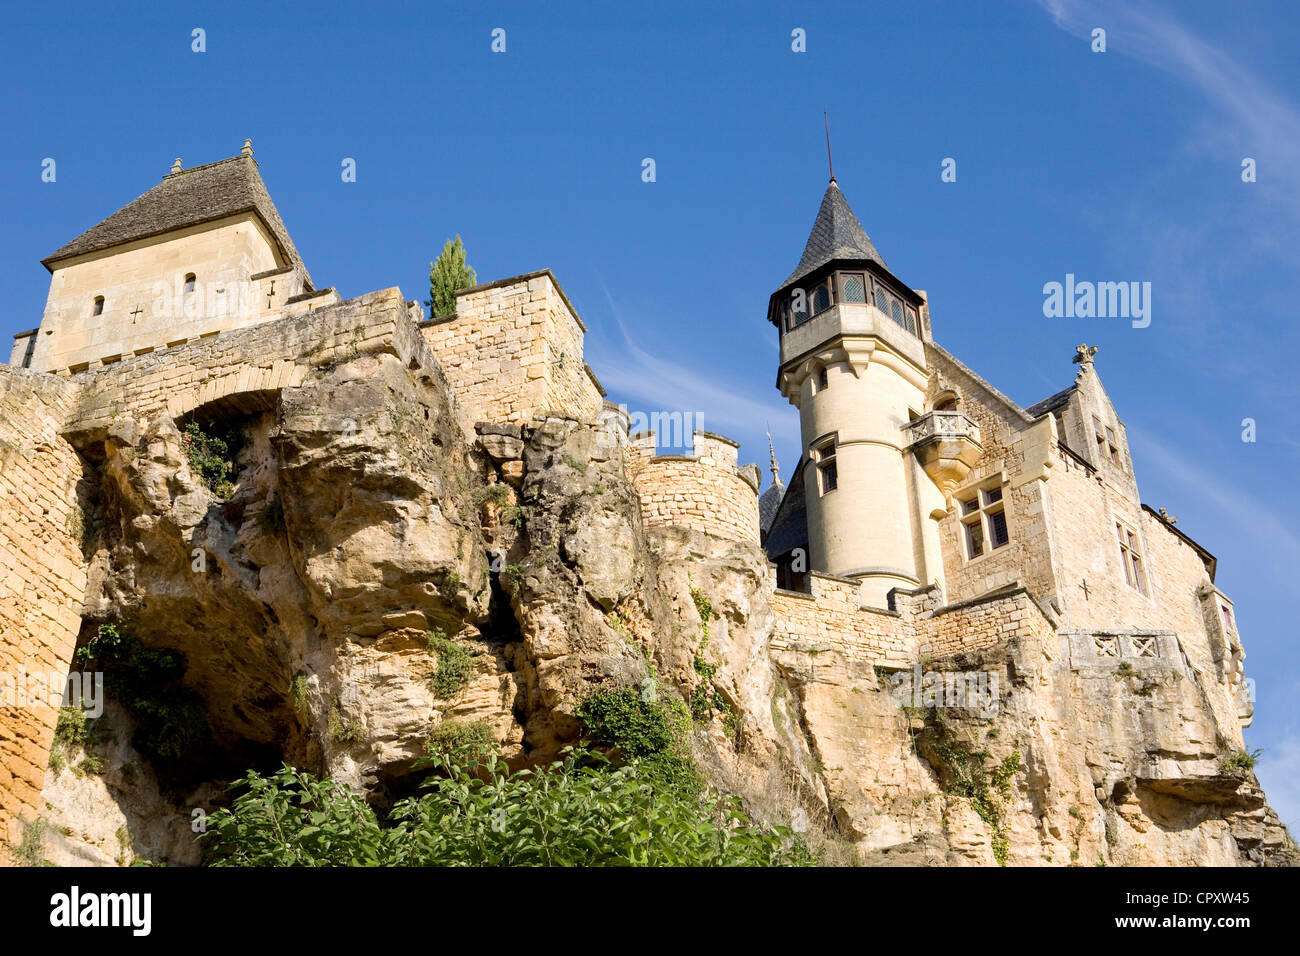 France, Dordogne, Perigord Noir, Dordogne Valley, Vitrac Montfort, Chateau de Montfort on a rock spur Stock Photo